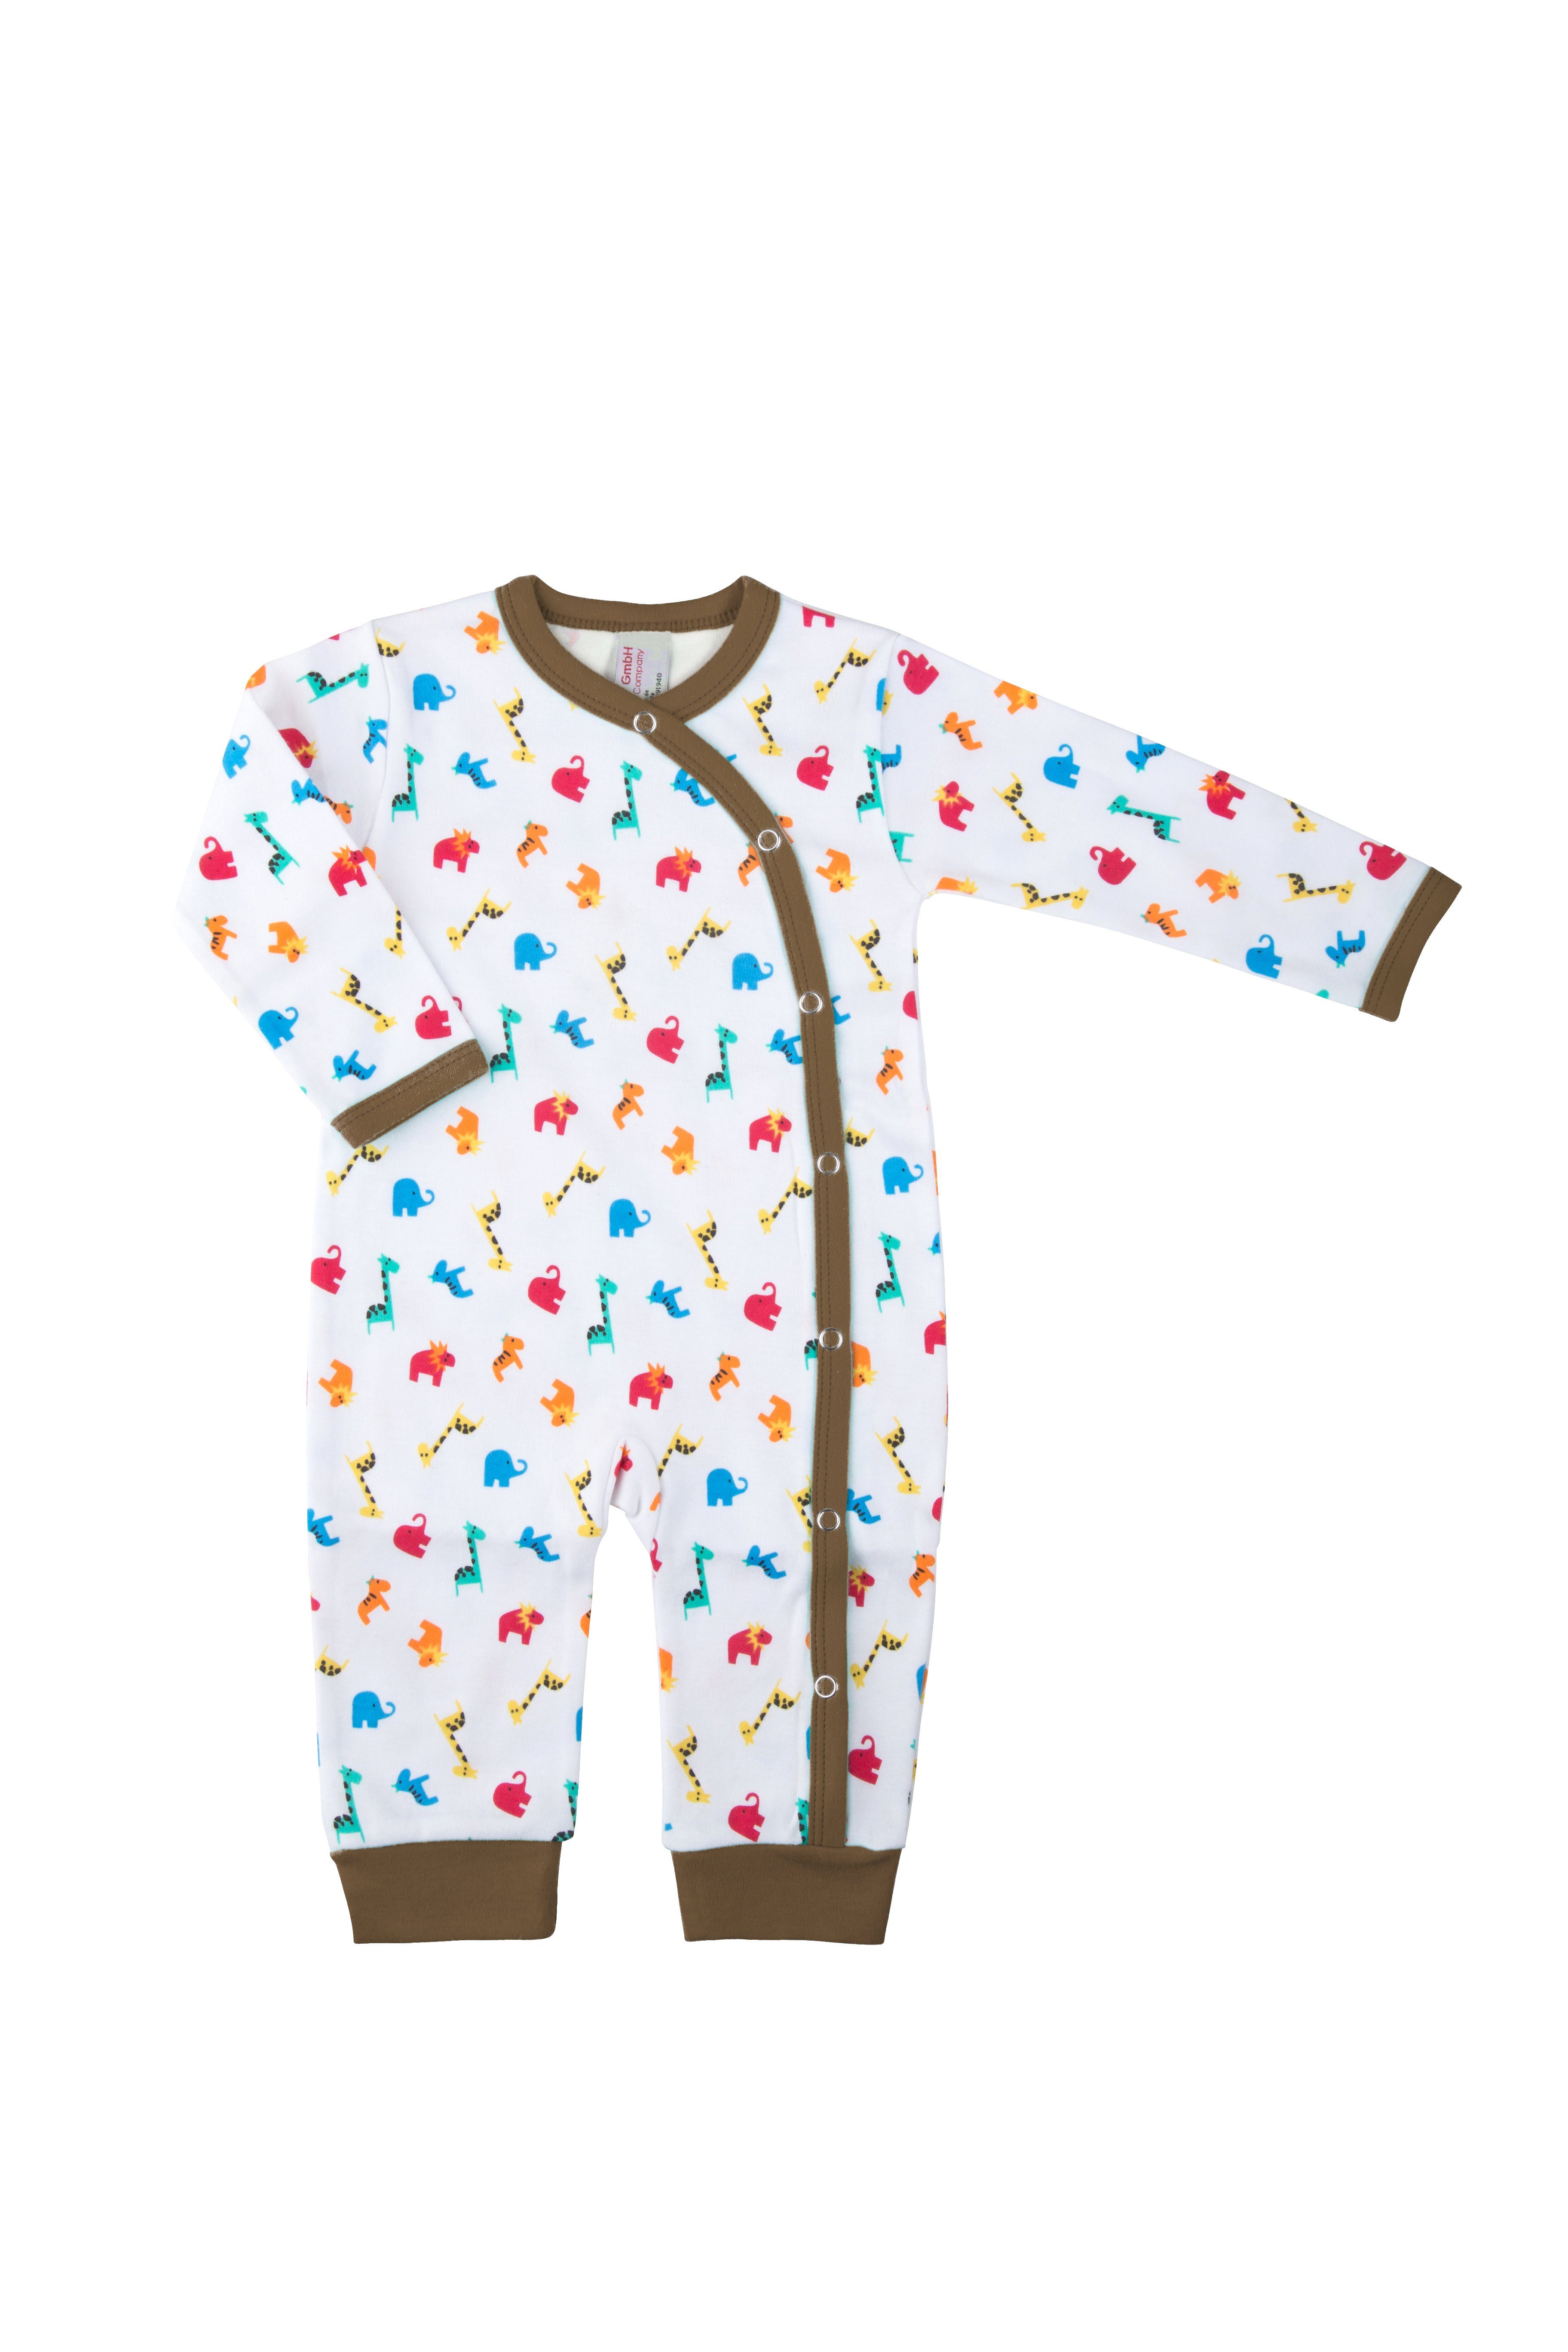 Clinotest Schlafoverall Baby Schlafanzug aus Jersey, Druckknöpfe Braun Zootiere